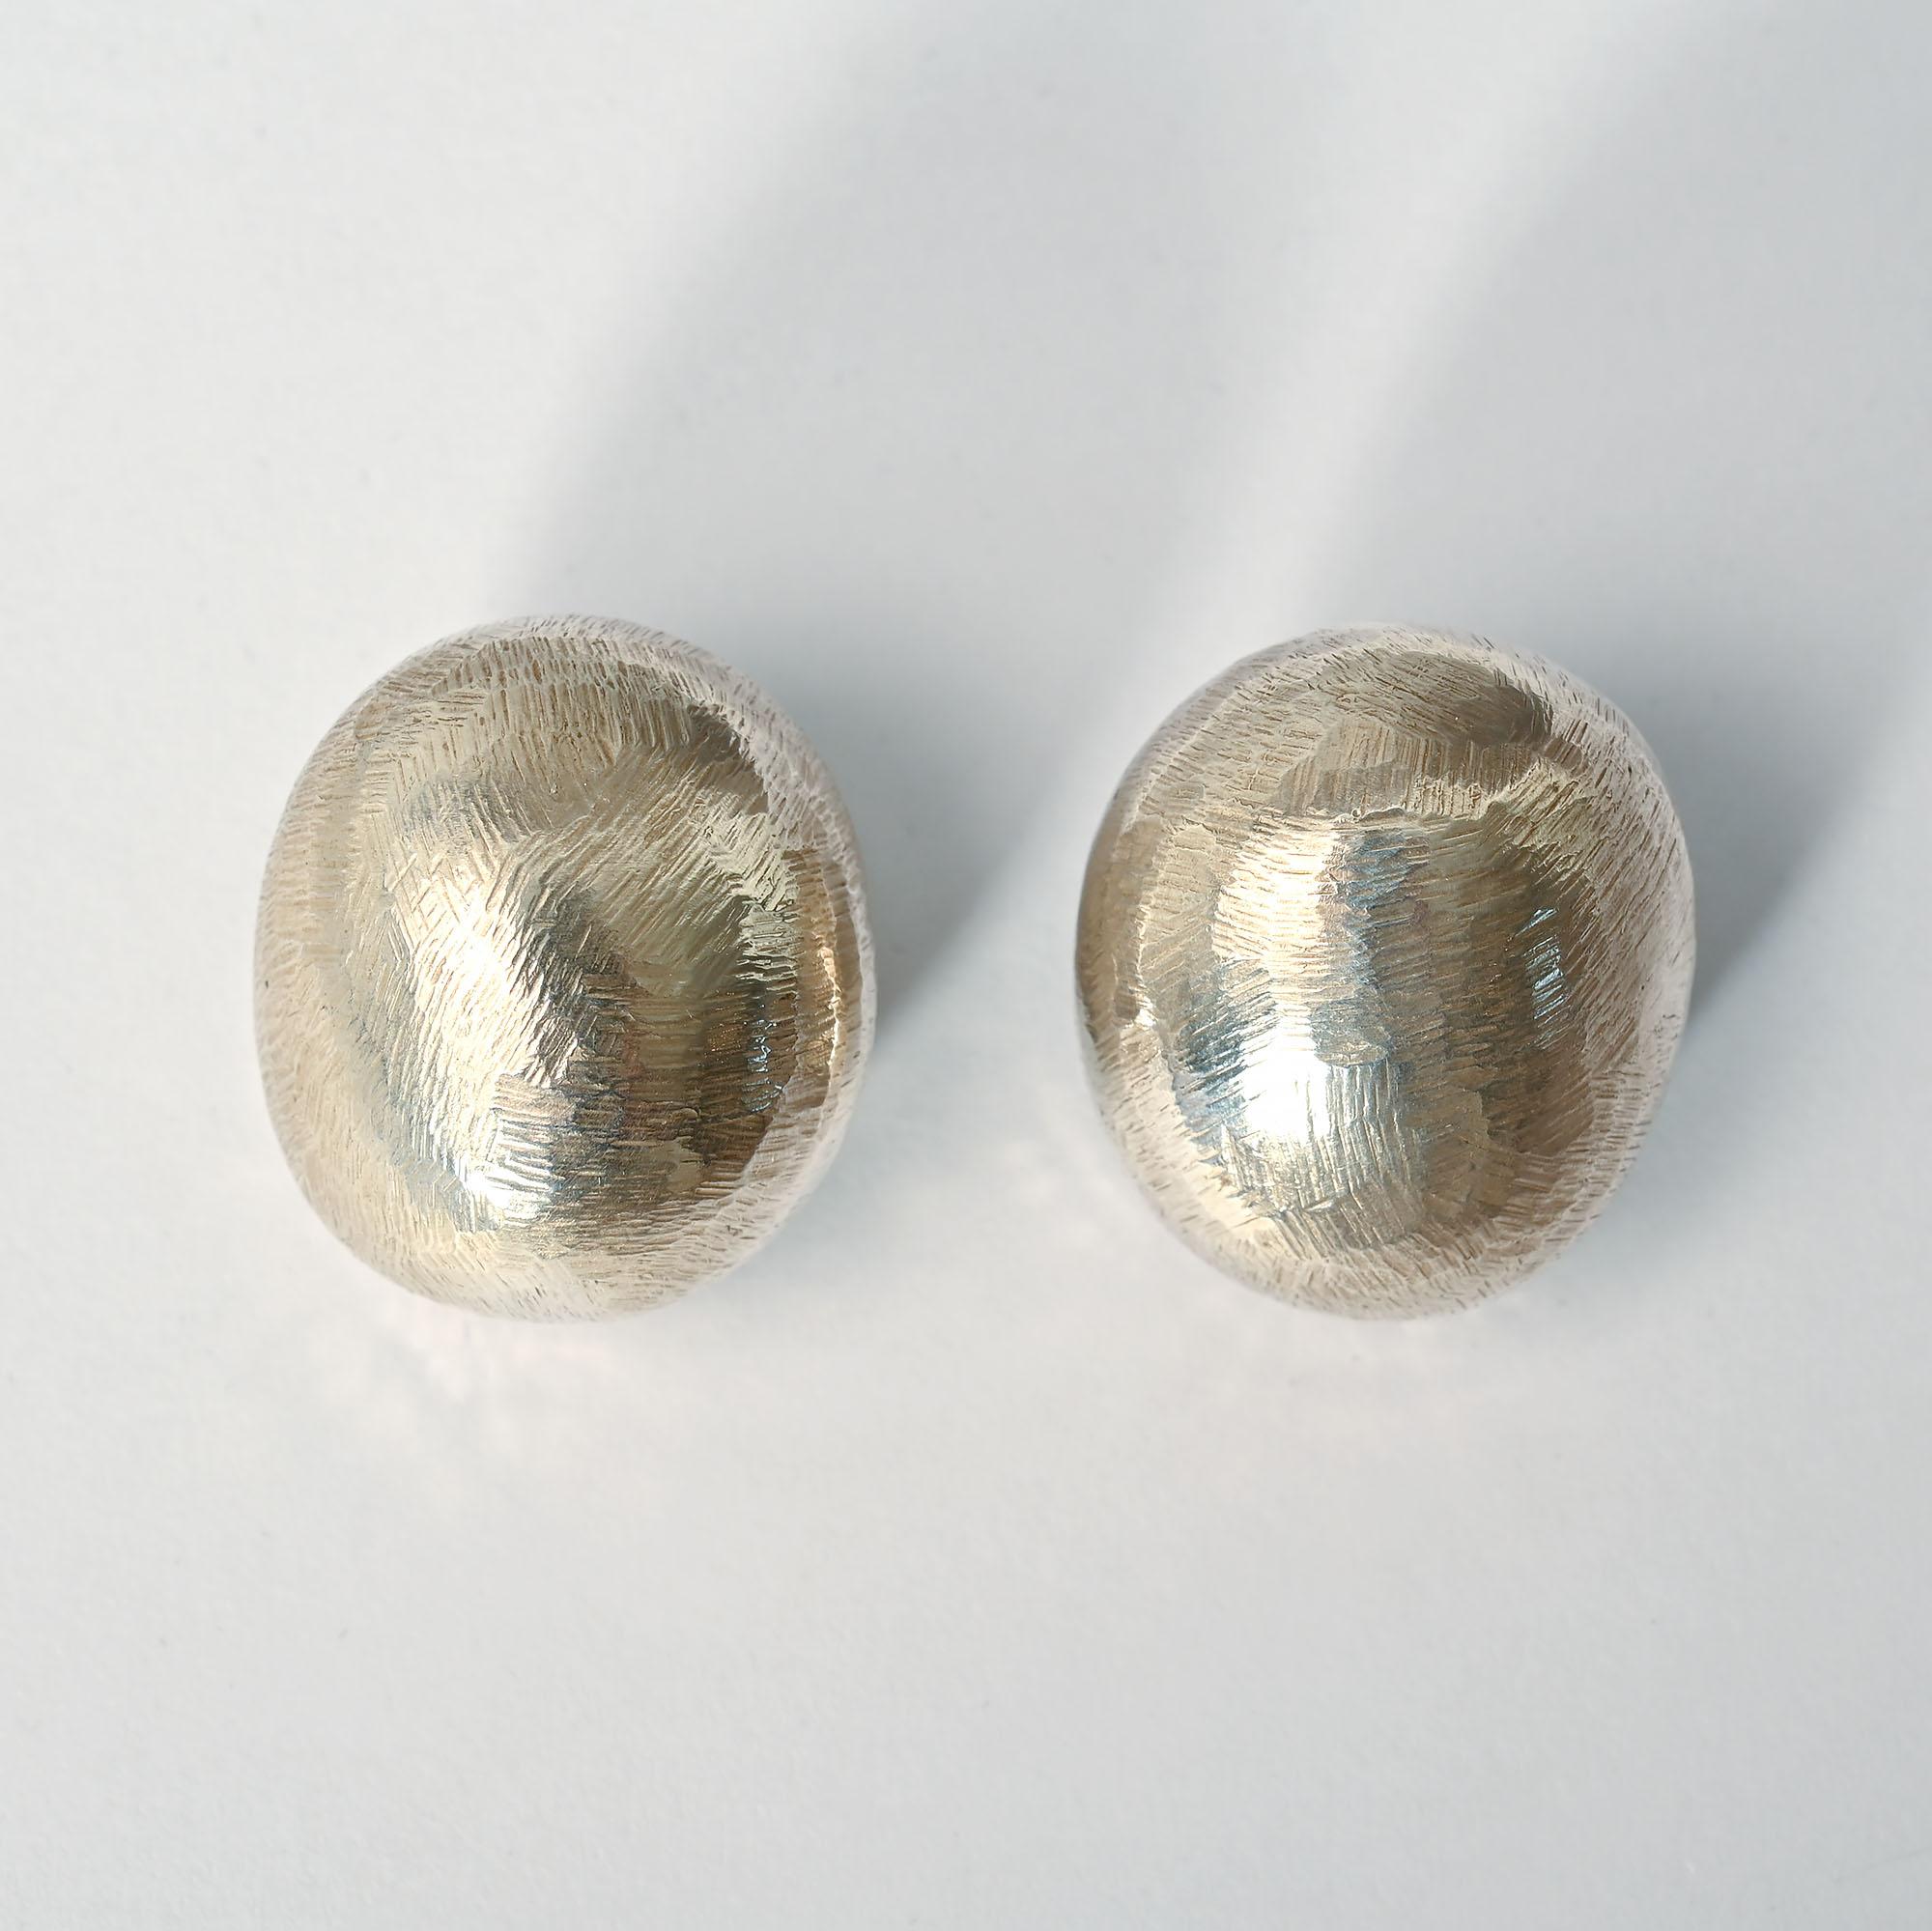 Boucles d'oreilles ovales en argent sterling de John Iversen de sa série Pebble. Elles ont la surface légèrement rayée qu'il privilégie souvent. Les boucles d'oreilles mesurent 7/8